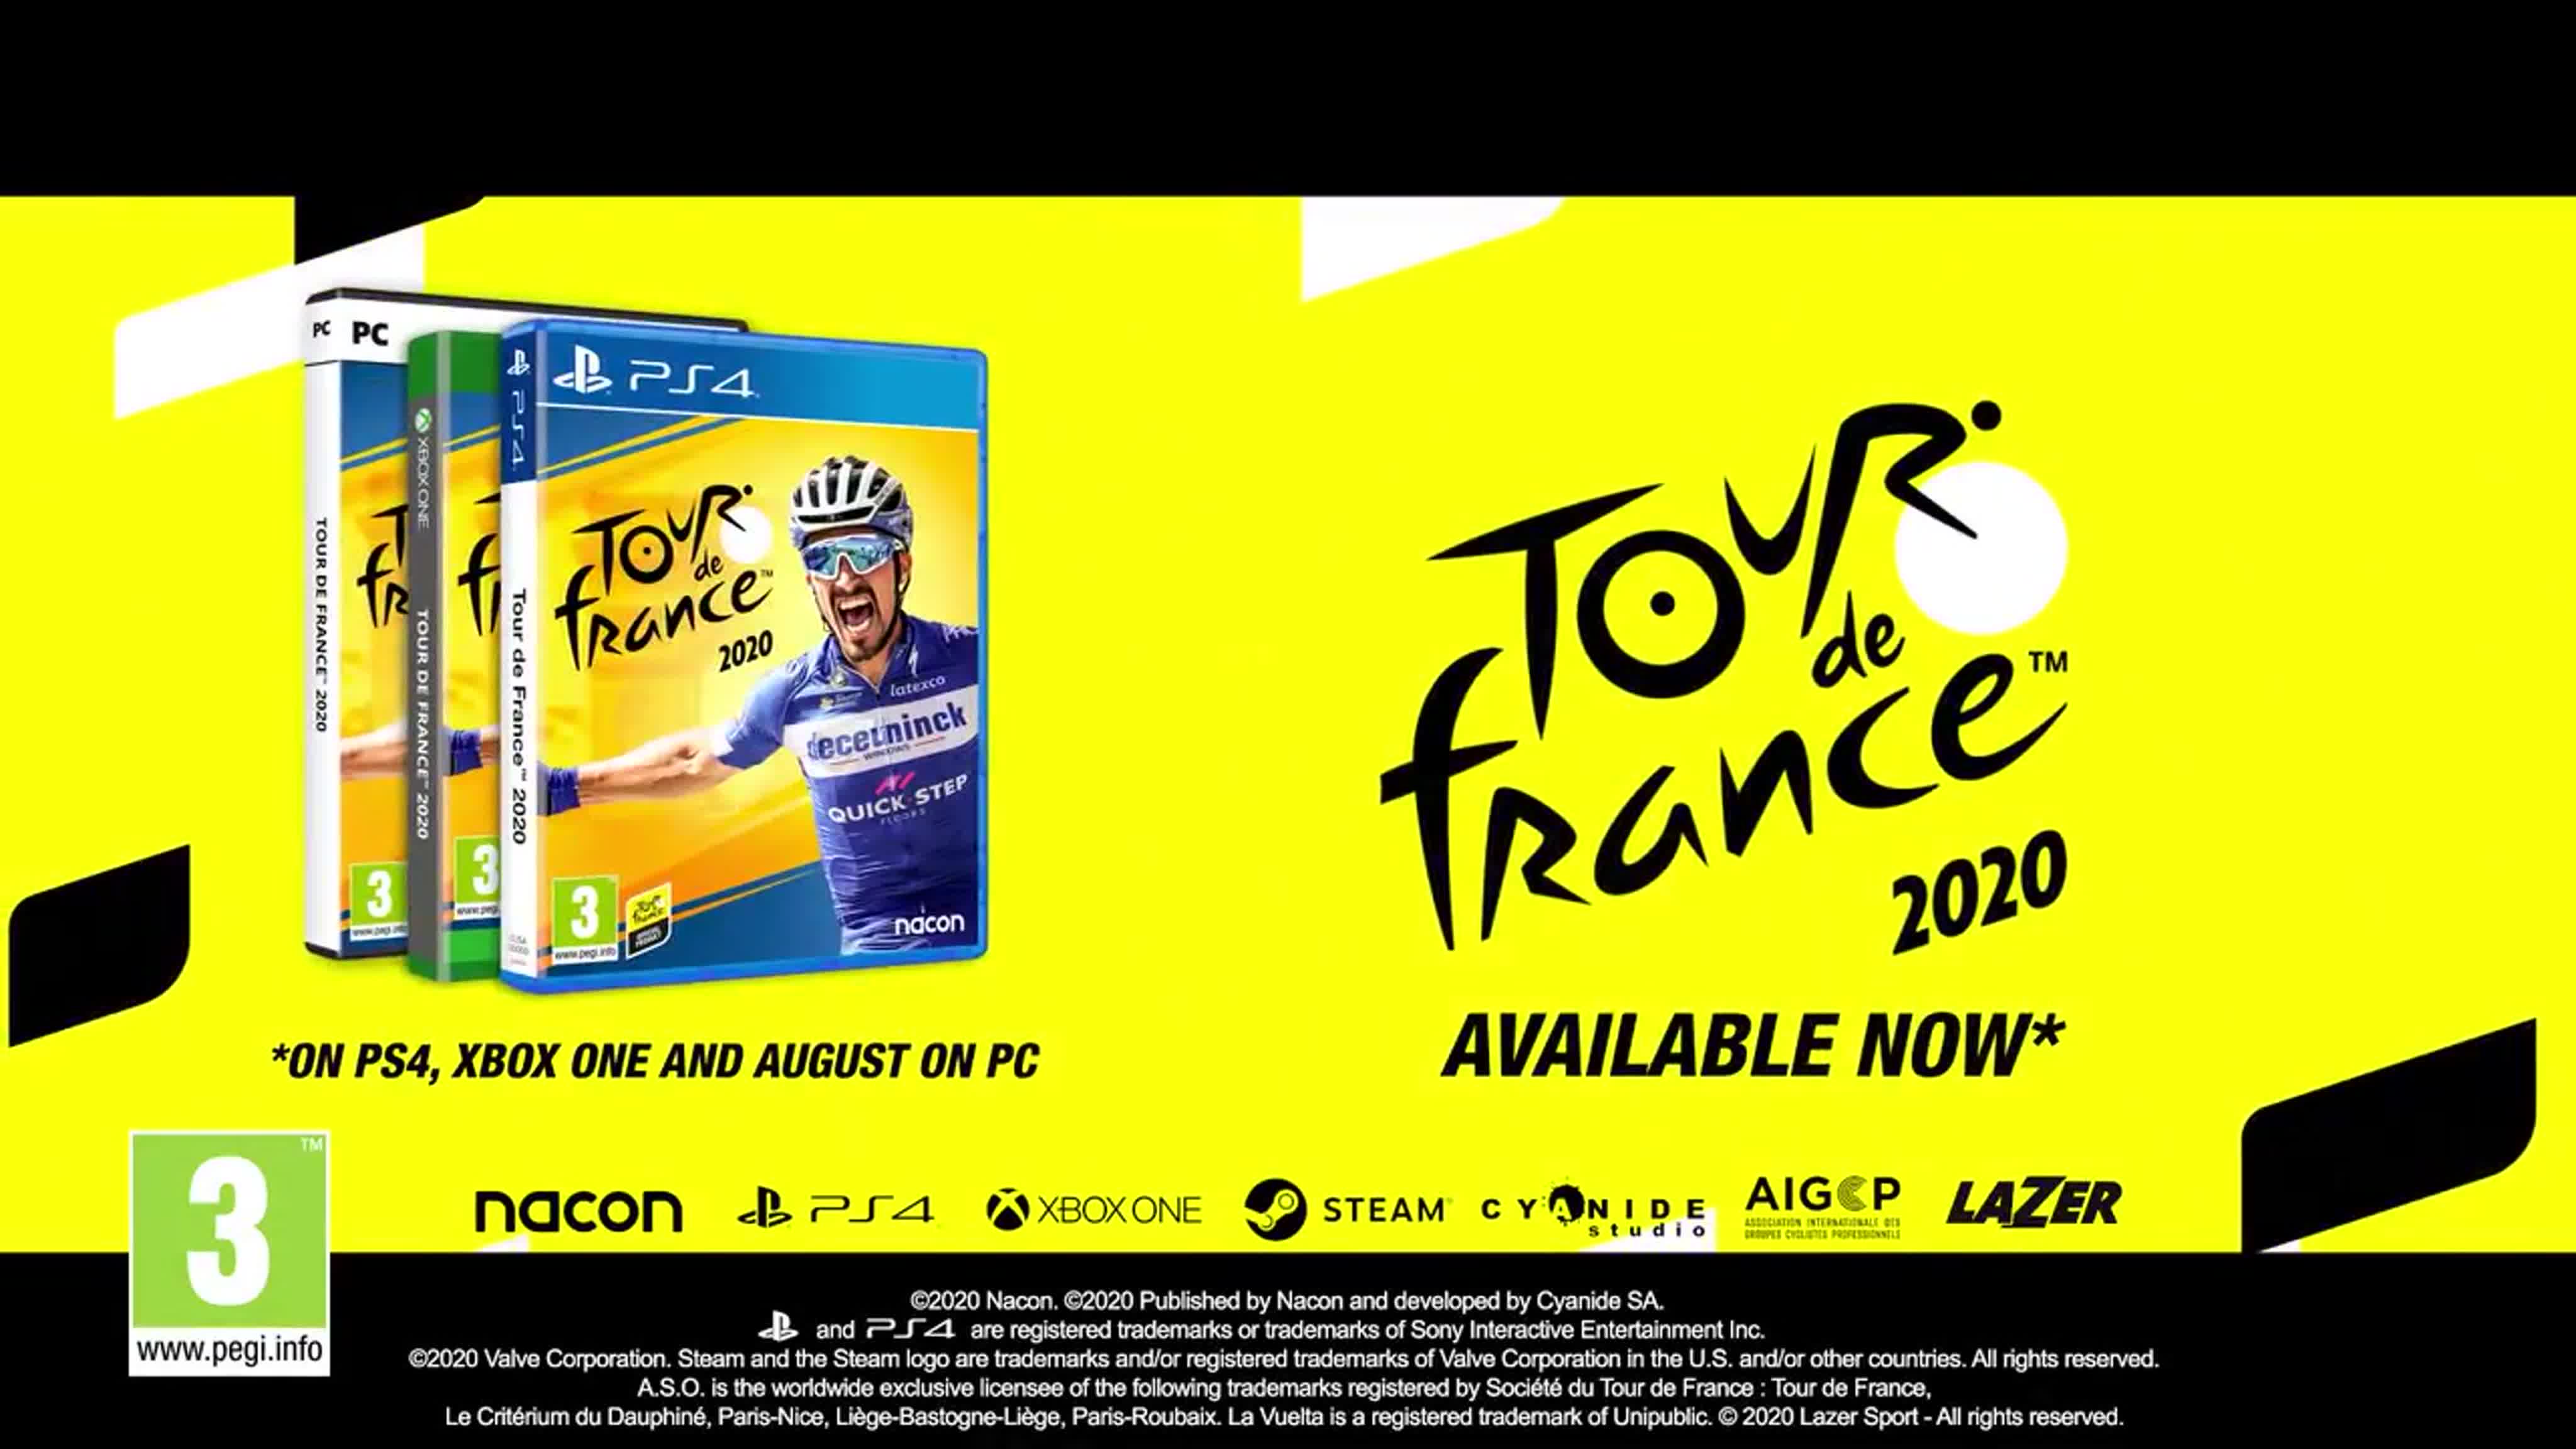 Tour de france the videogame trailer image